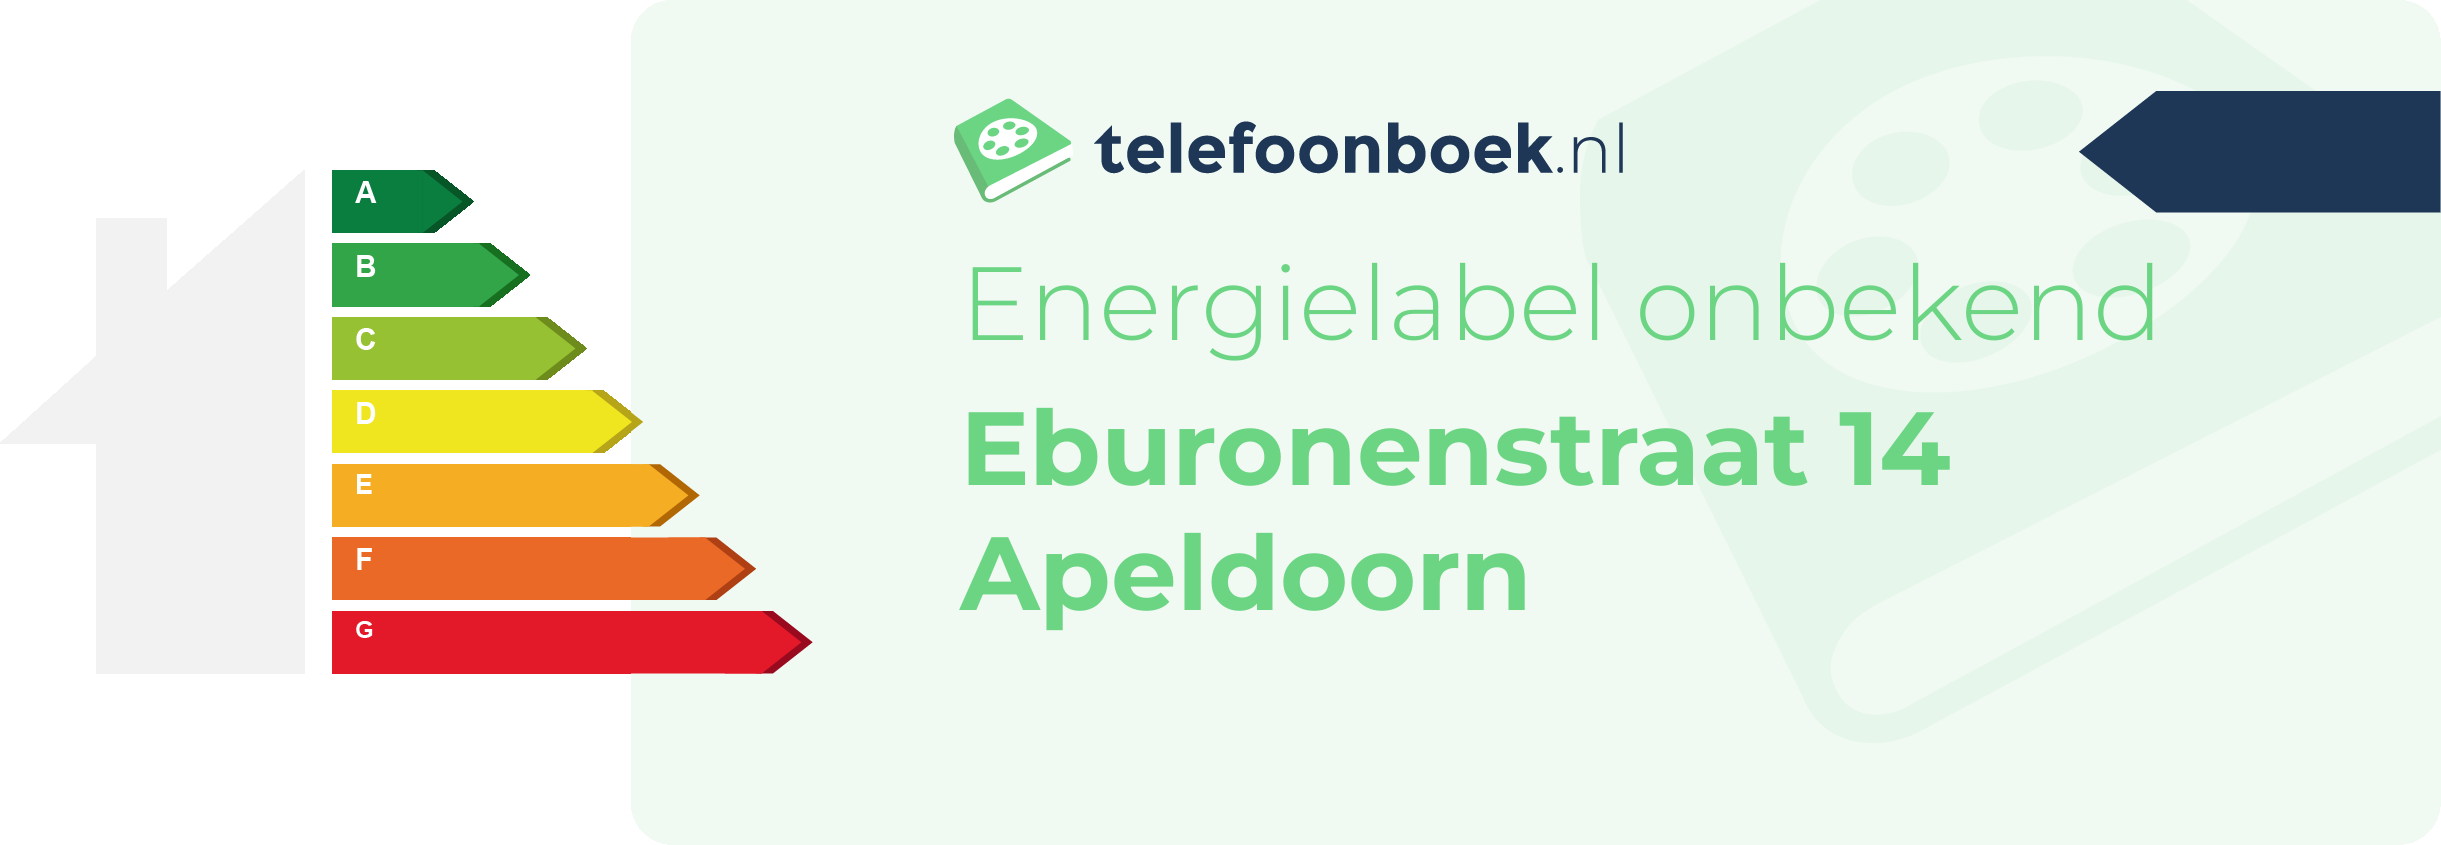 Energielabel Eburonenstraat 14 Apeldoorn